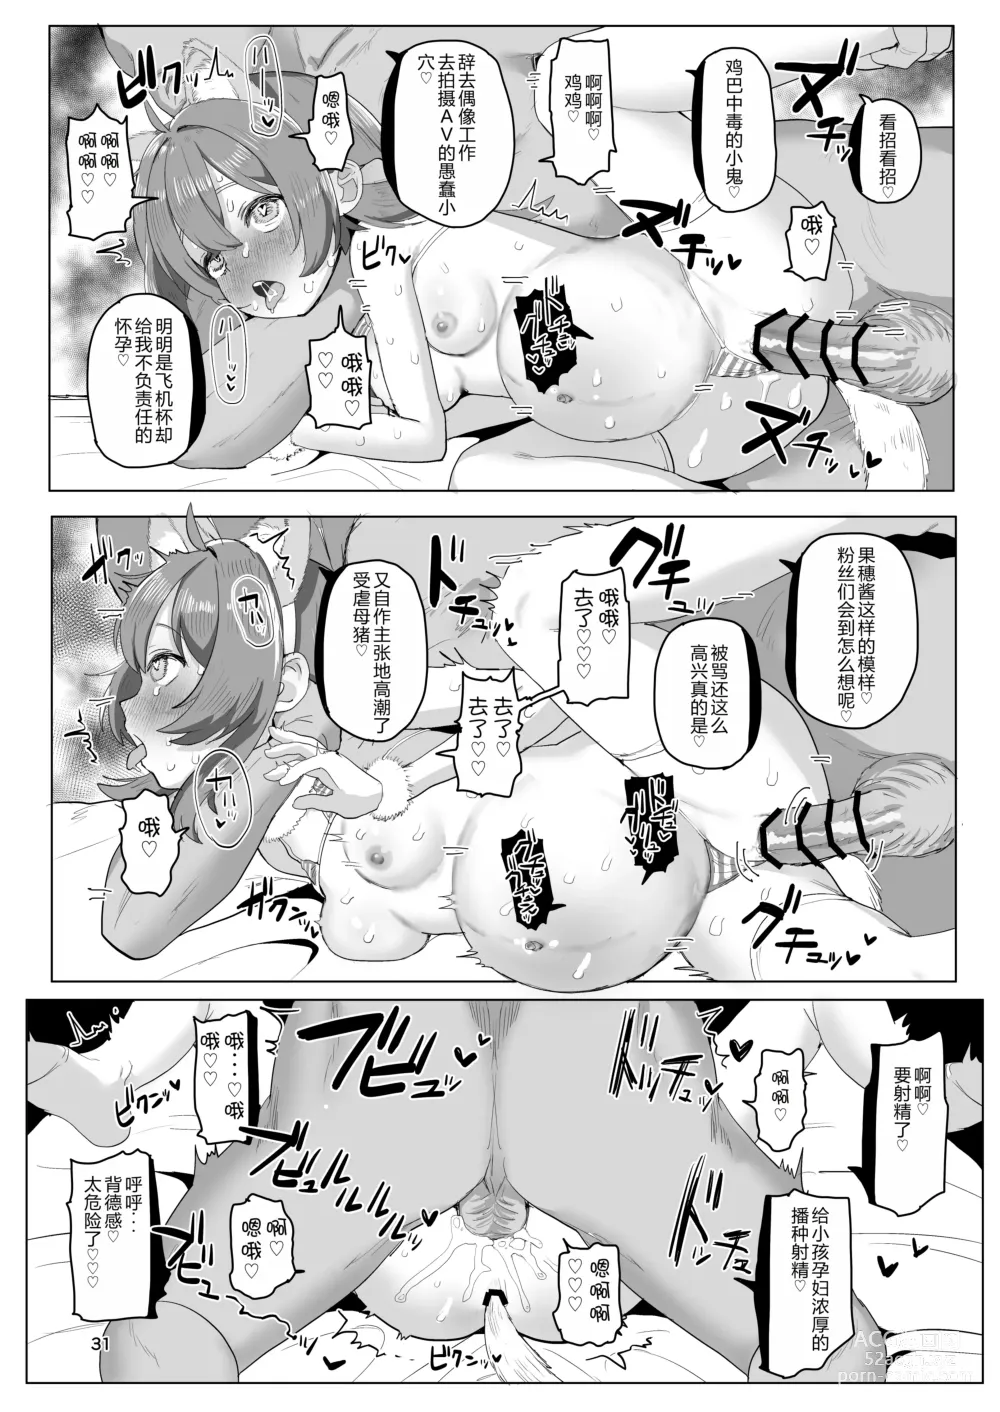 Page 31 of doujinshi Hitokuchi Echi Manga 2